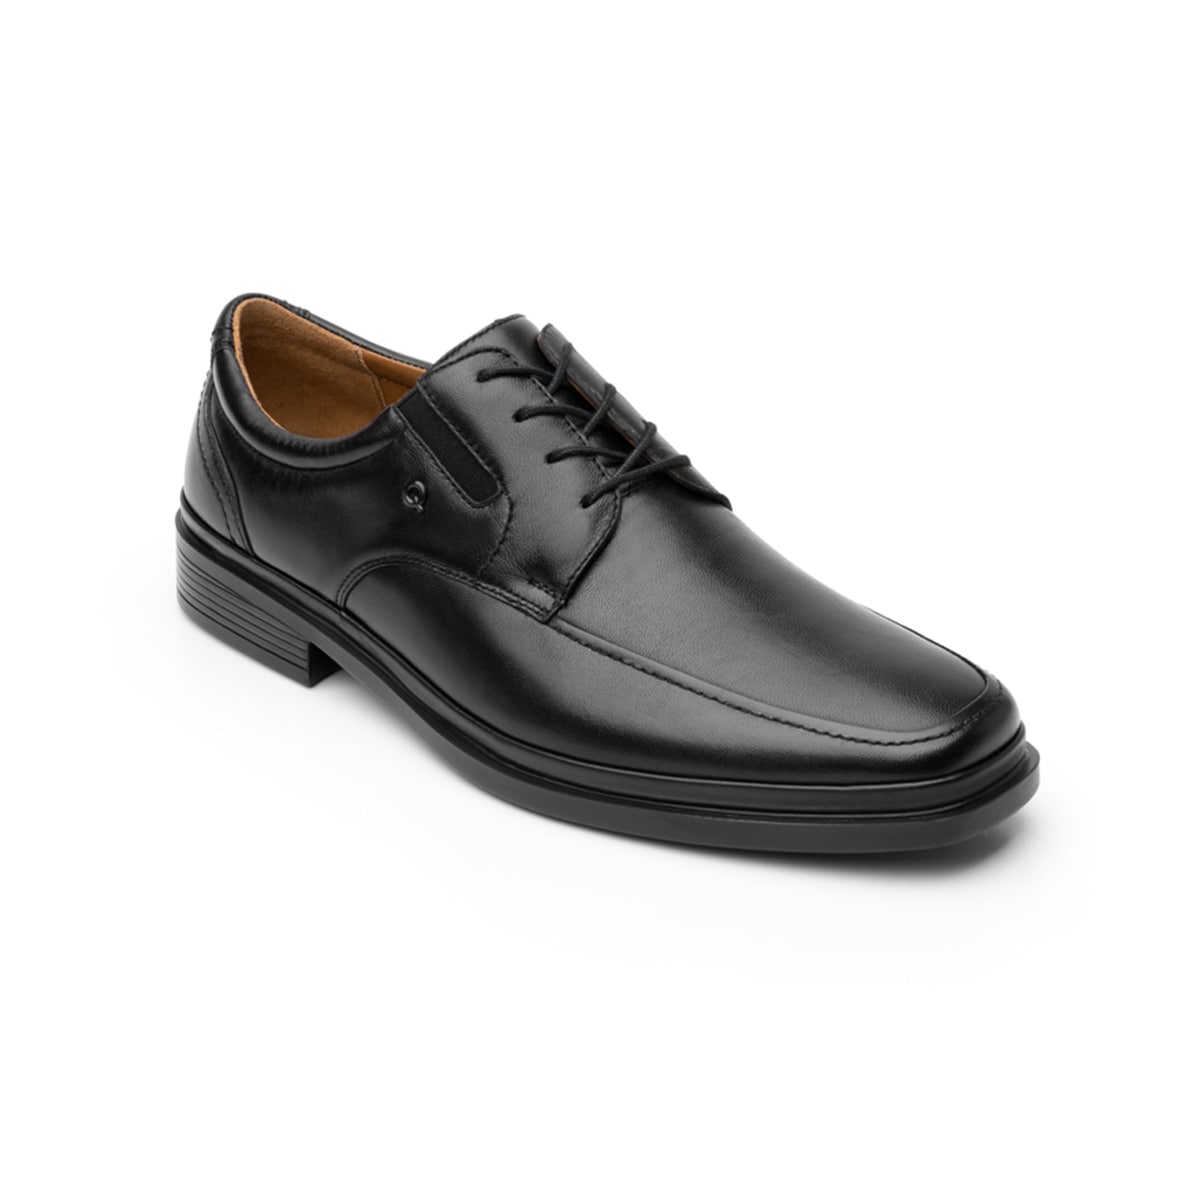 Zapato De Vestir Quirelli Con Corte Acojinado Hombre - Estilo 701304 Negro | Flexi México Tienda en